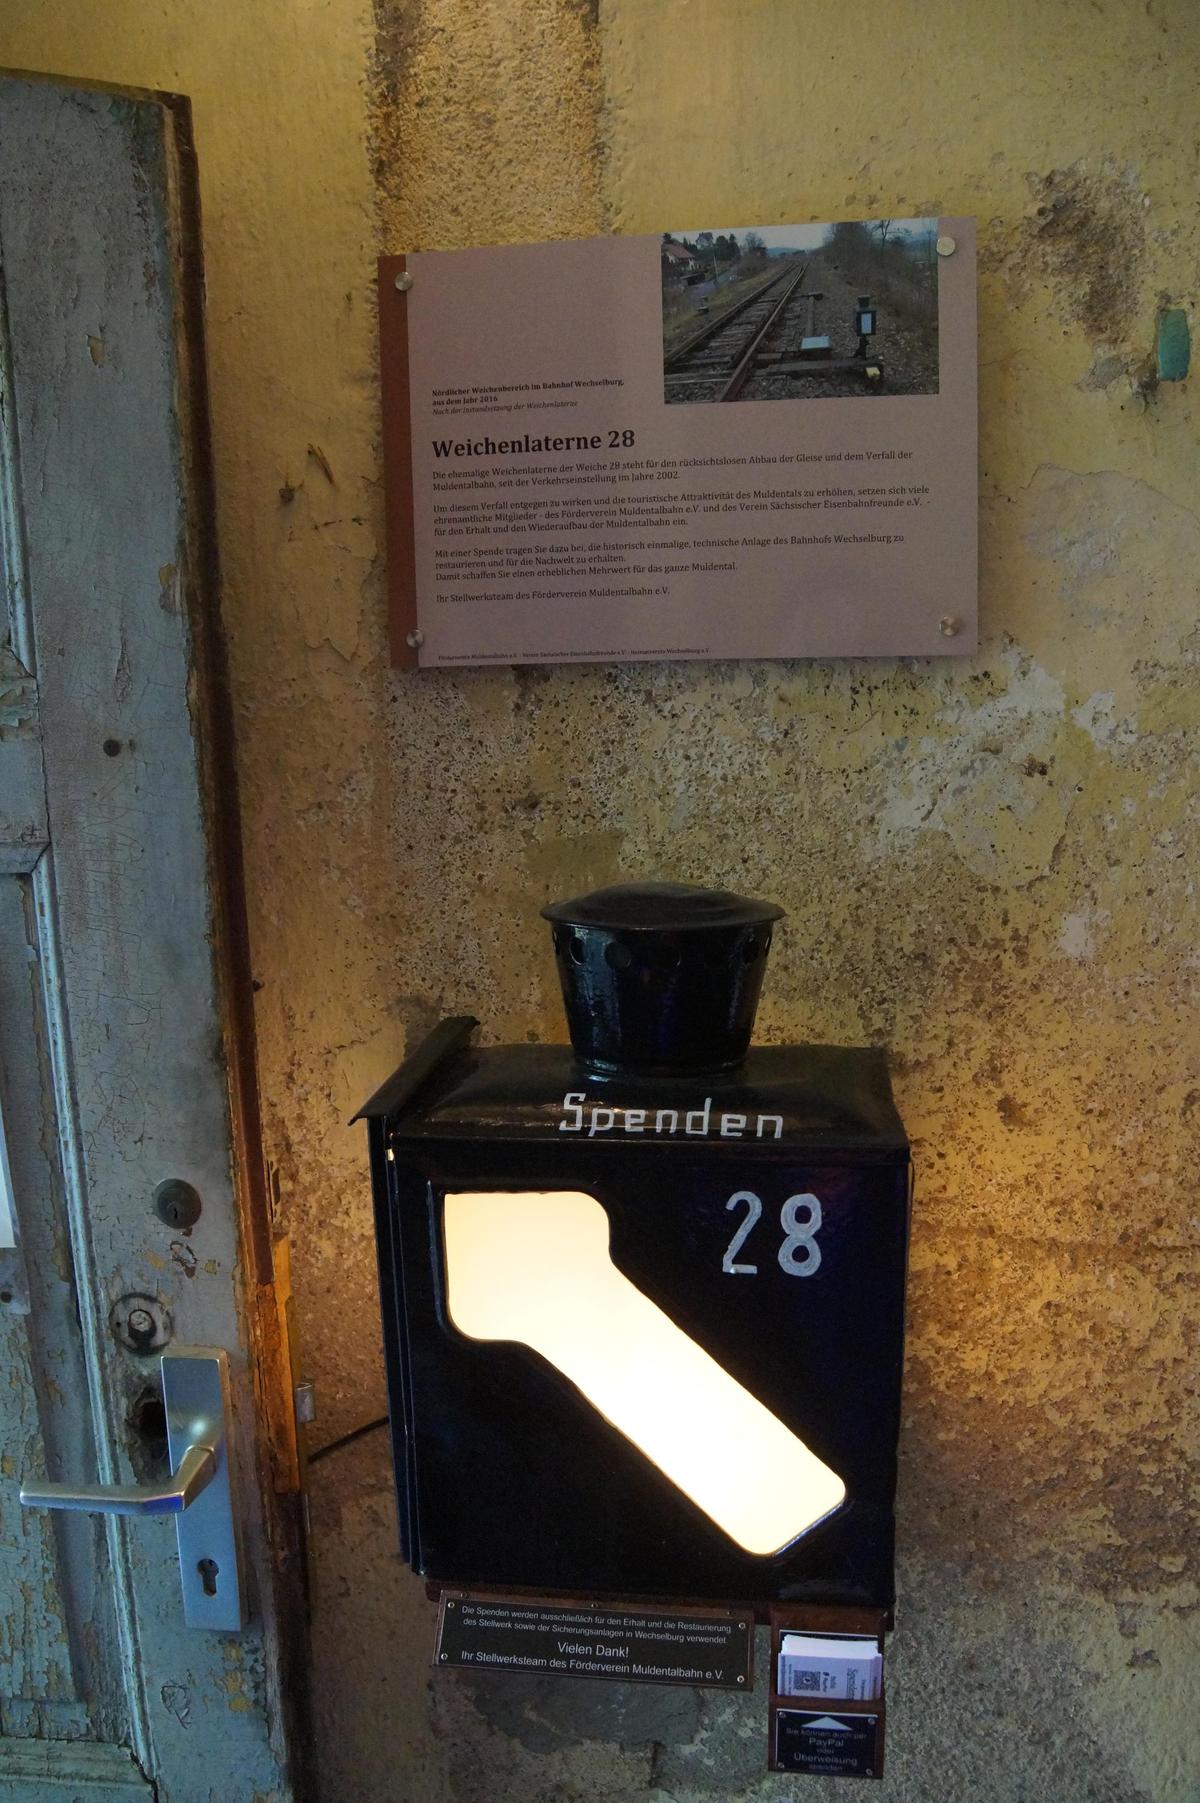 Die Laterne der Wechselburger Weiche 28 dient nun im Stellwerk dieses Bahnhofes als Spendenkasse für Zuwendungen zum Erhalt des Stellwerkes.